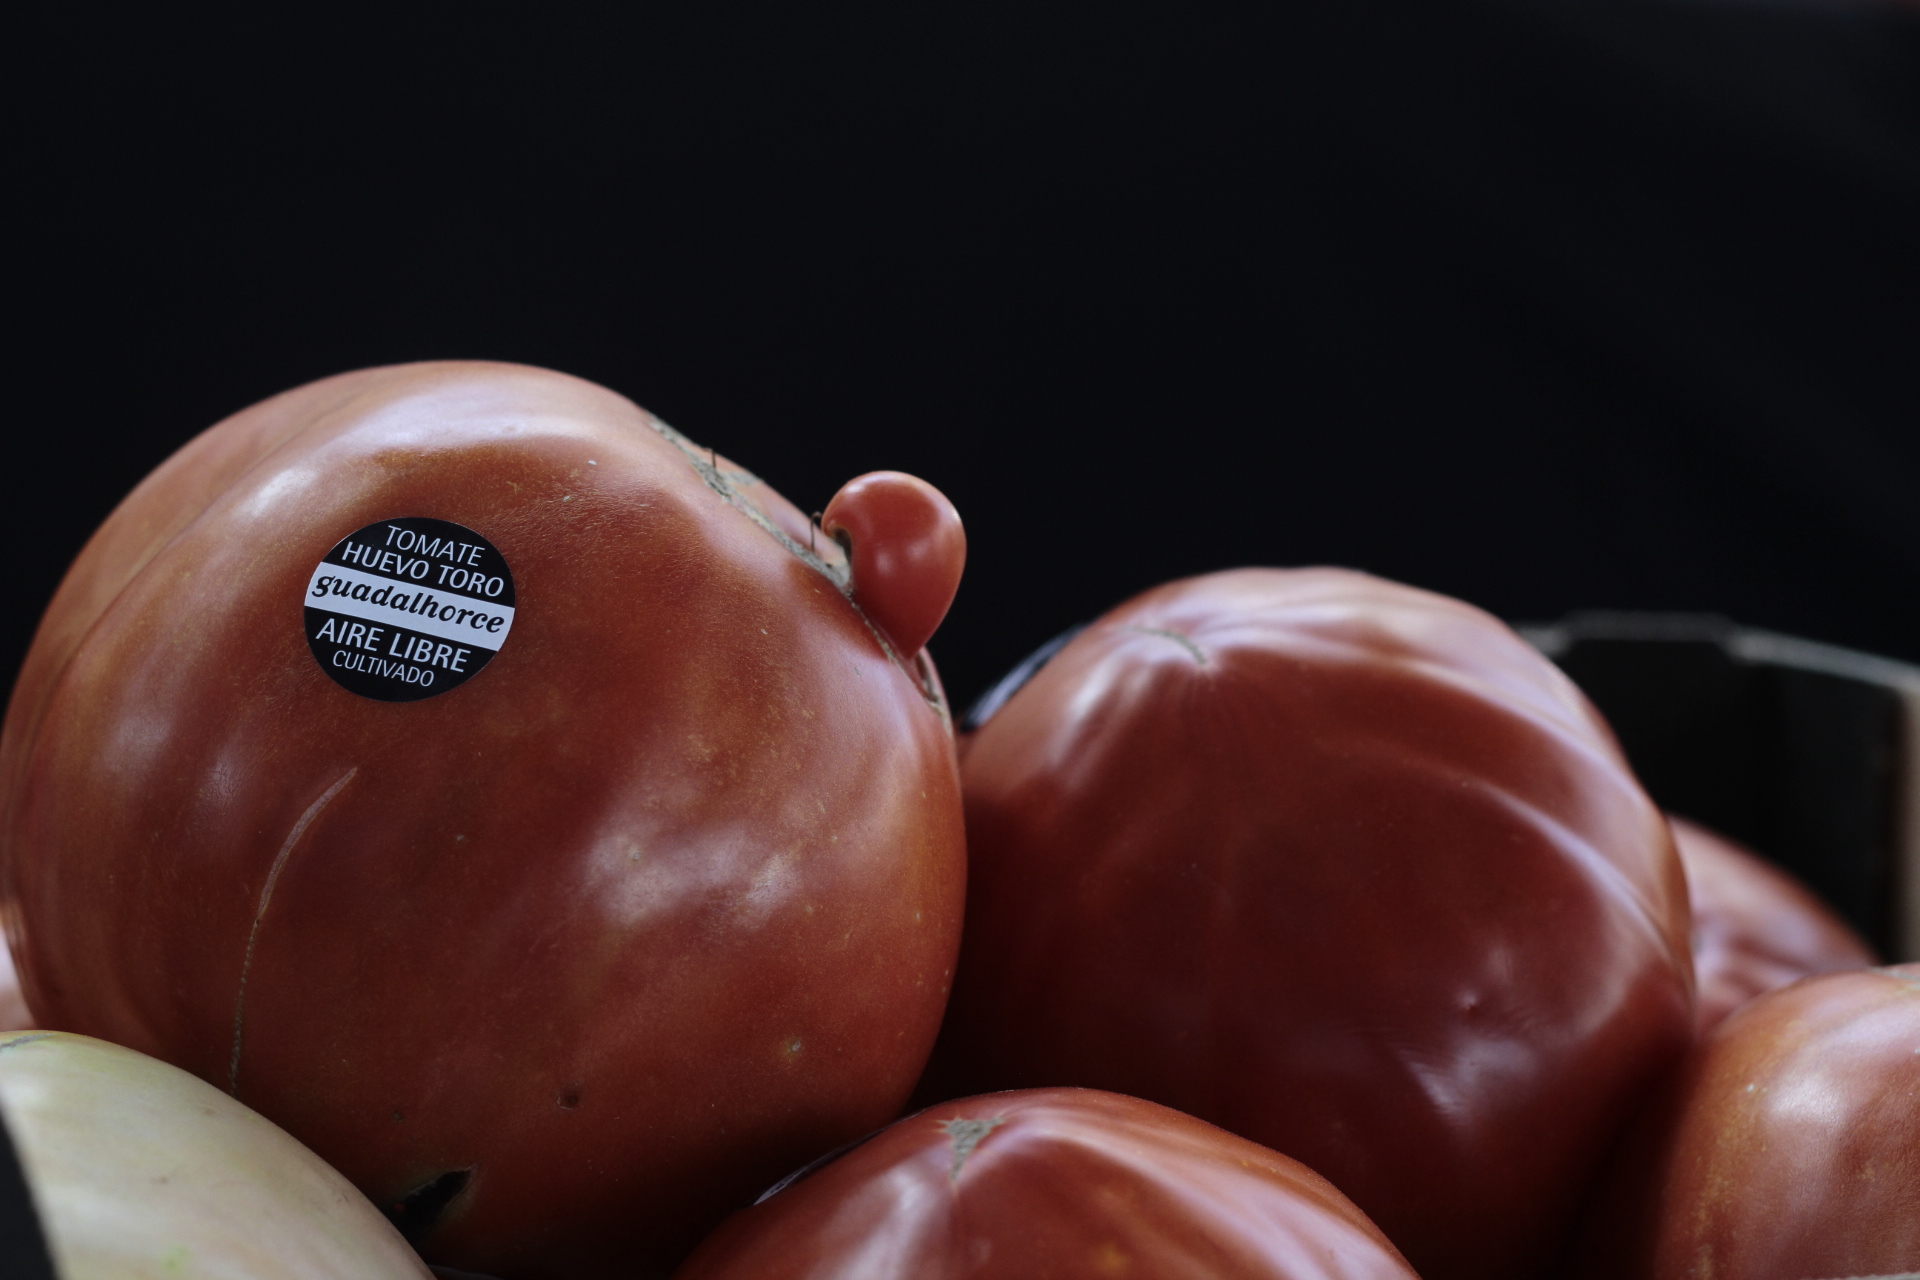 El mejor tomate Huevo Toro Cultivado al aire Libre en el Valle del Guadalhorce, adjudicado por 2.100 euros al Pimpi.